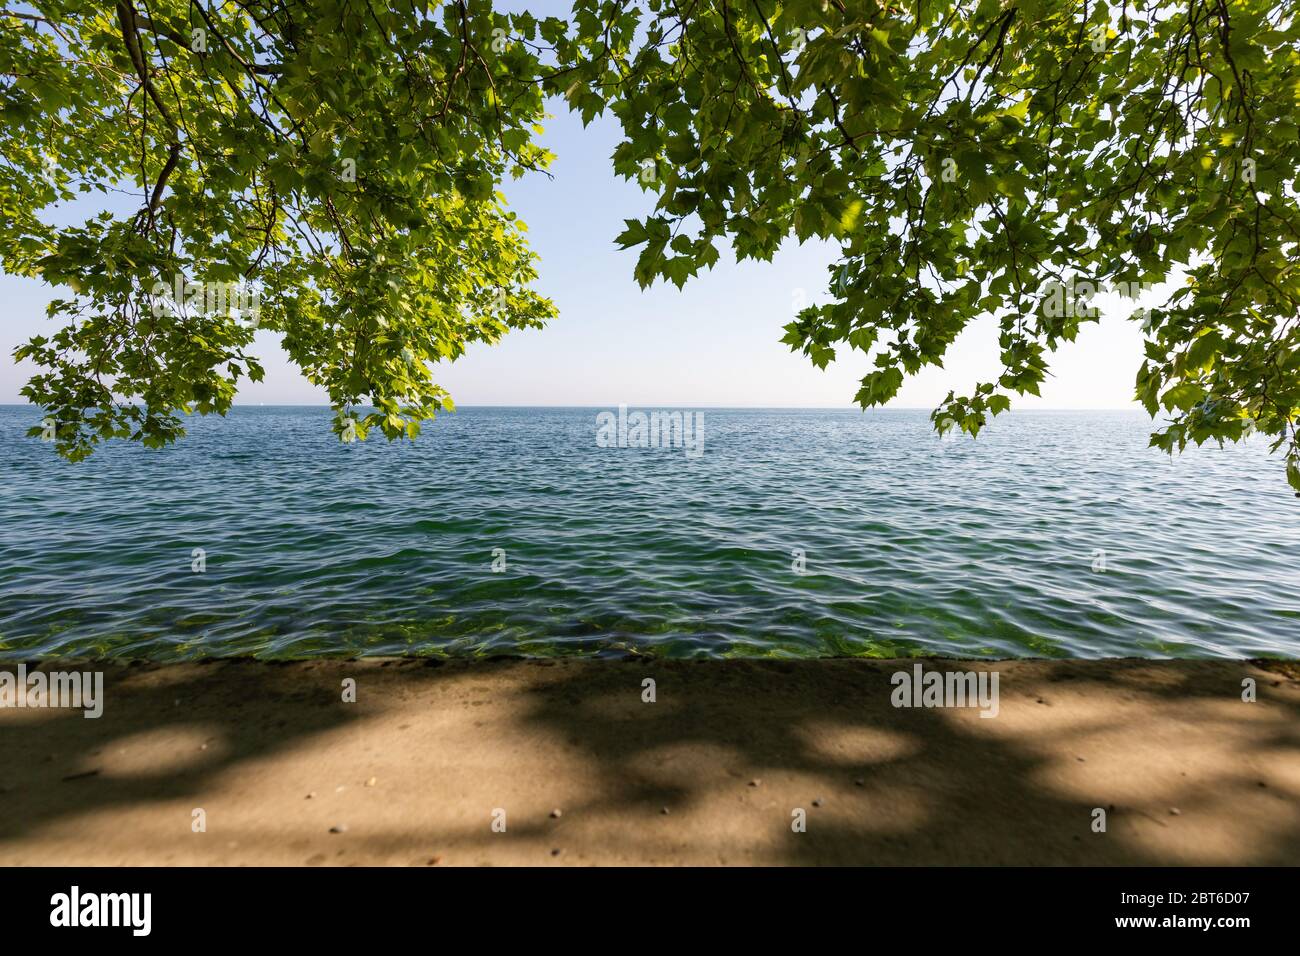 Belle vue sur le lac de Constance à rorschach, suisse, avec arbre suspendu Banque D'Images